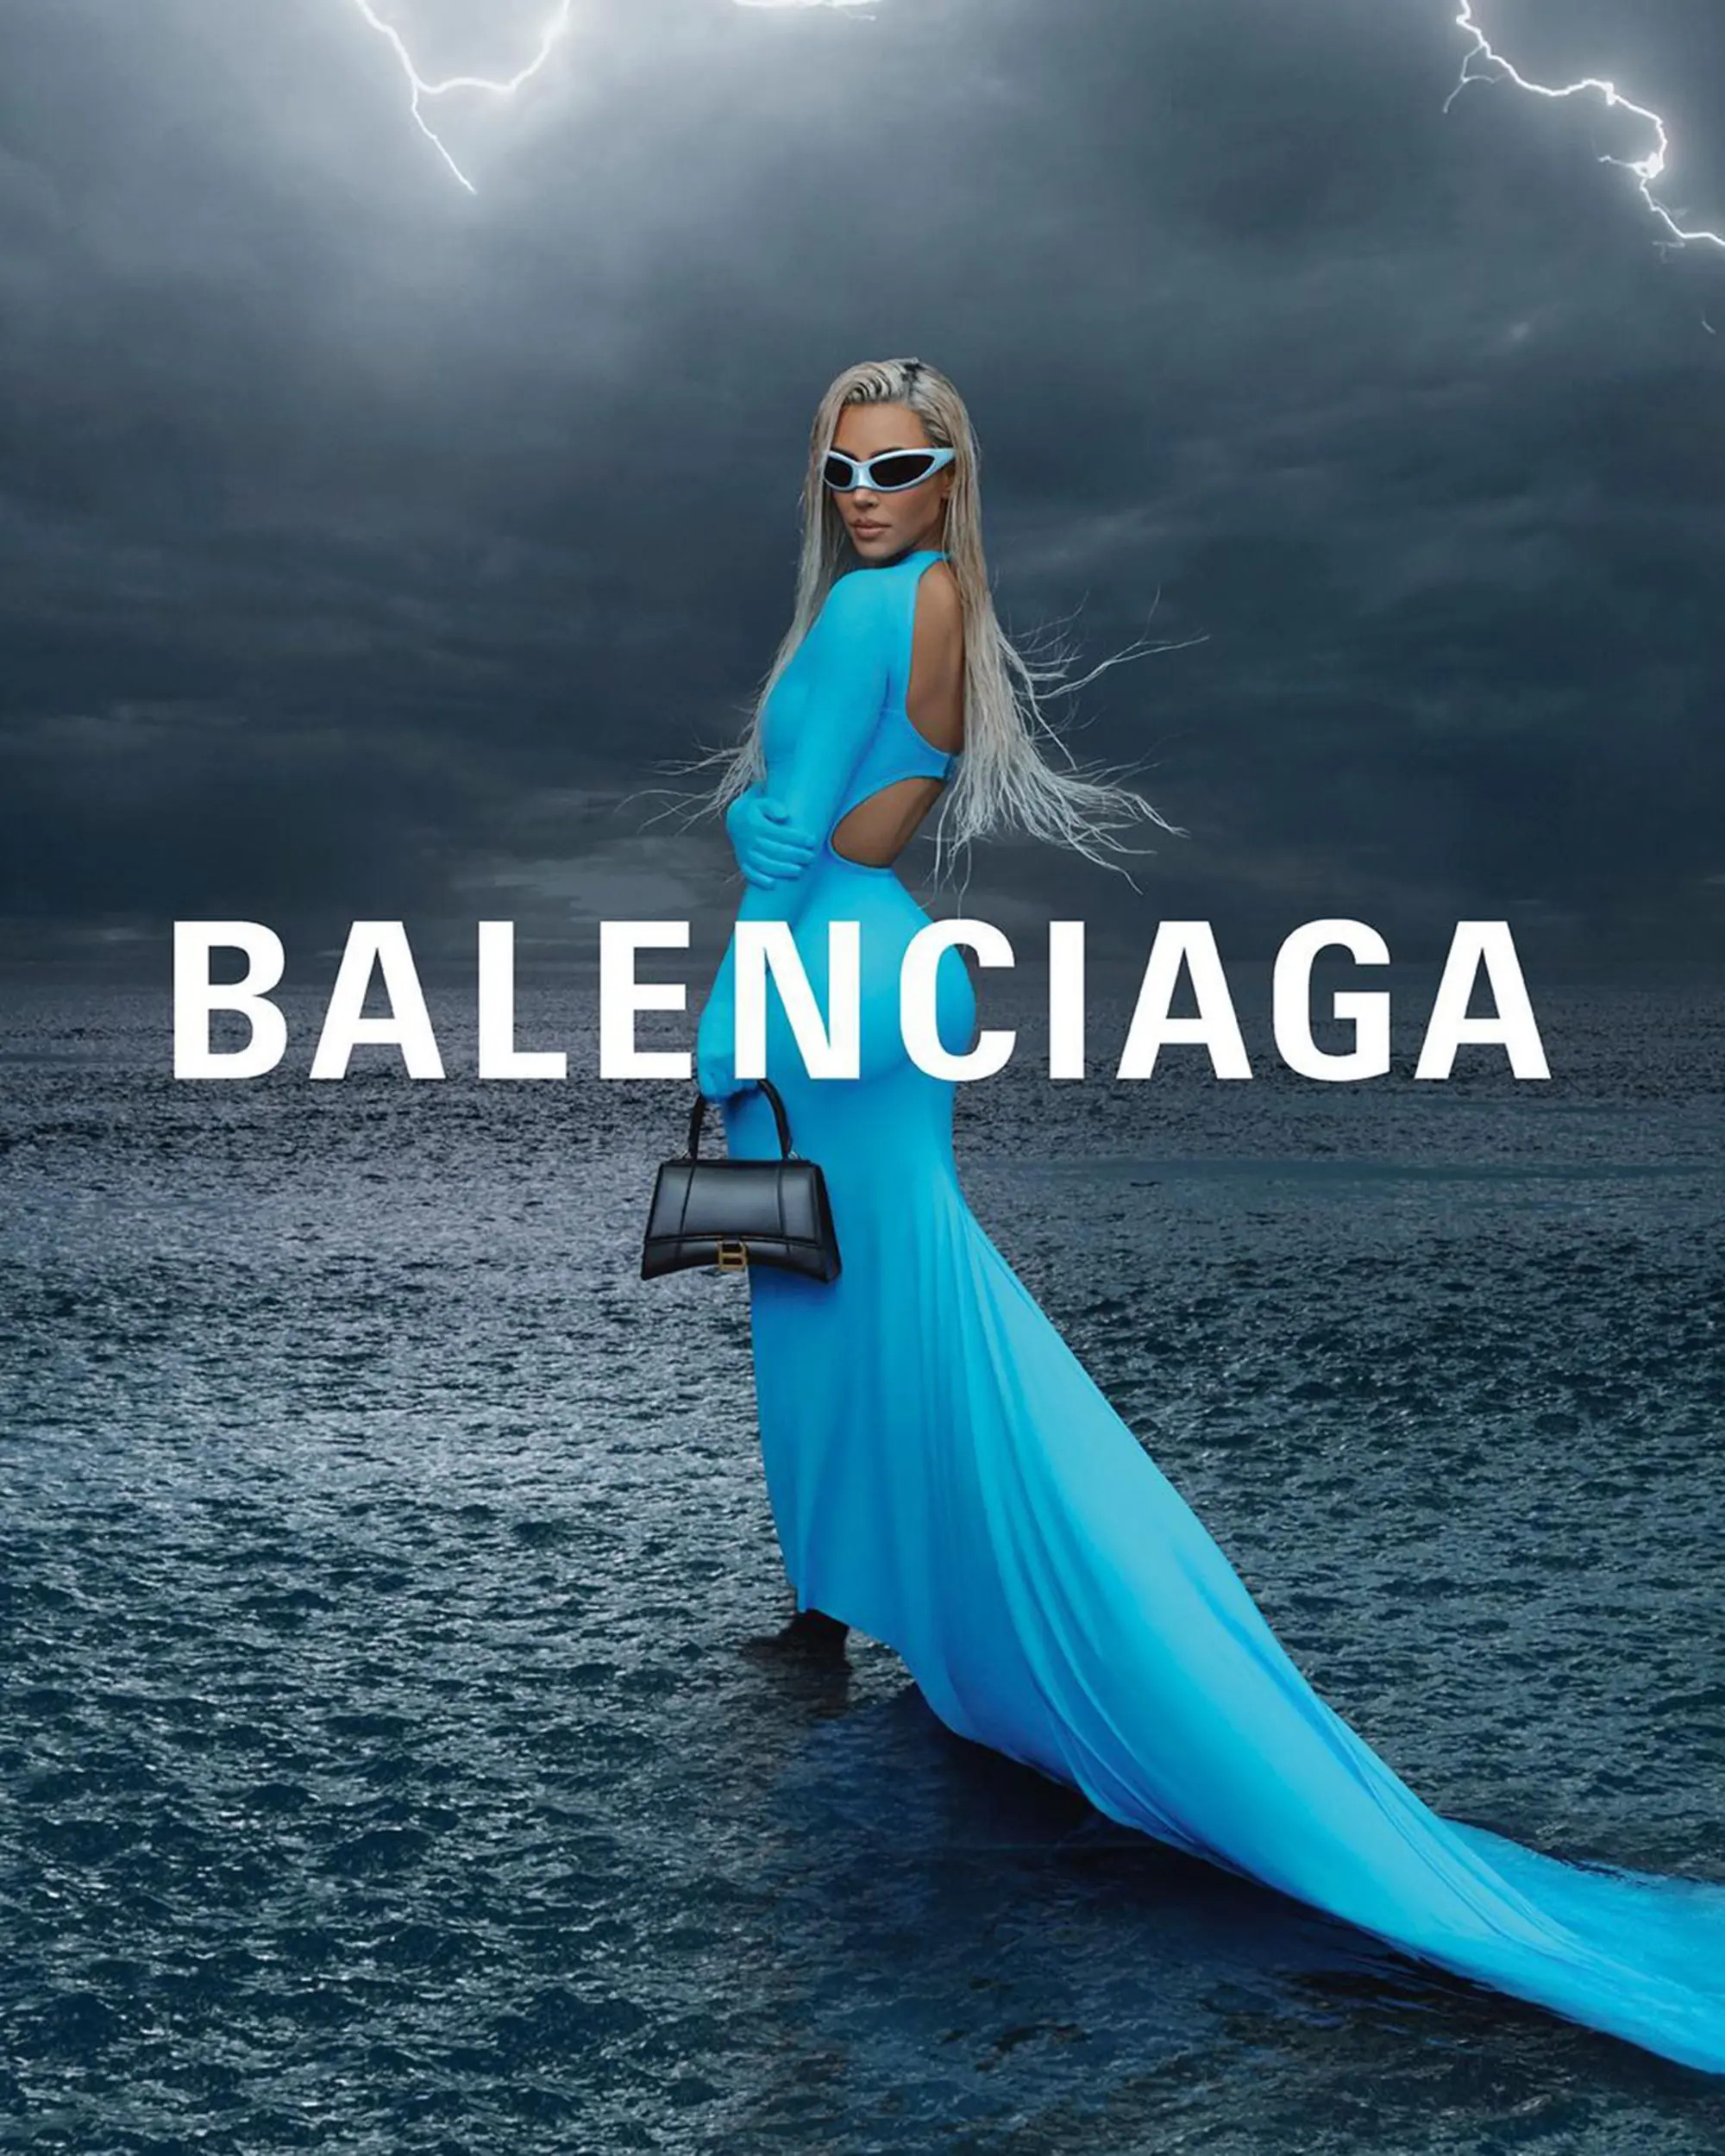 Balenciagas campaign Ảnh Getty - Kim Kardashian và Balenciaga: Đã đến lúc thay đổi khái niệm “nàng thơ”?